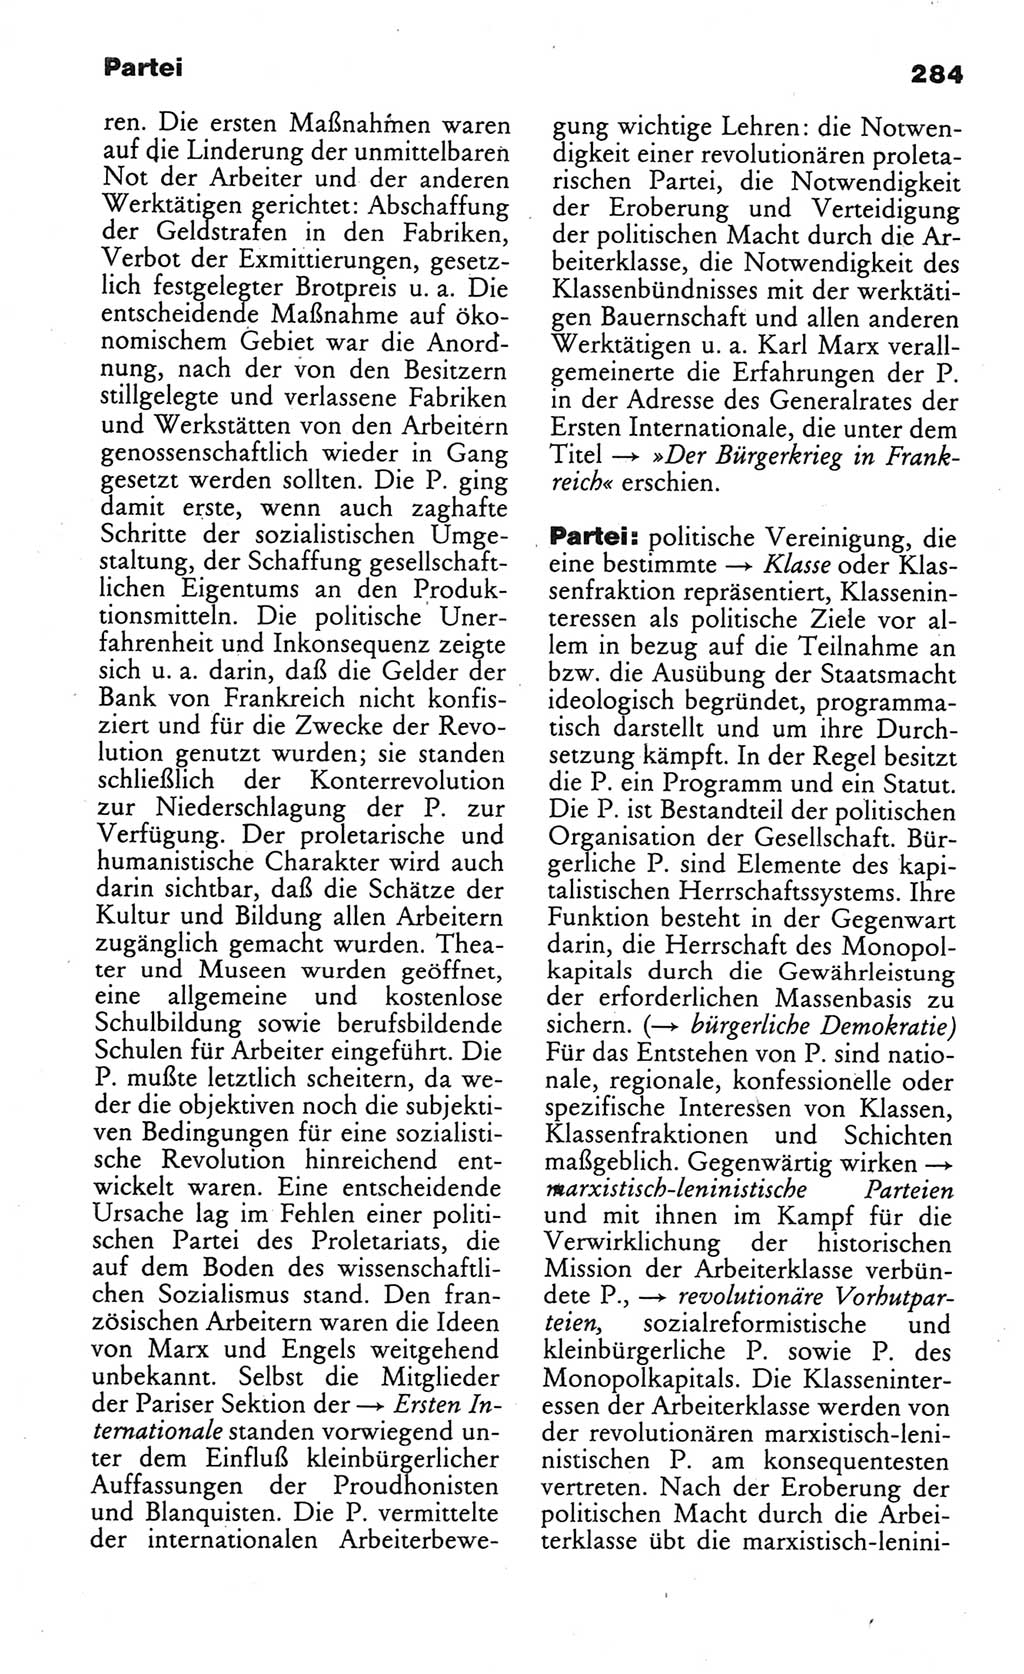 Wörterbuch des wissenschaftlichen Kommunismus [Deutsche Demokratische Republik (DDR)] 1984, Seite 284 (Wb. wiss. Komm. DDR 1984, S. 284)